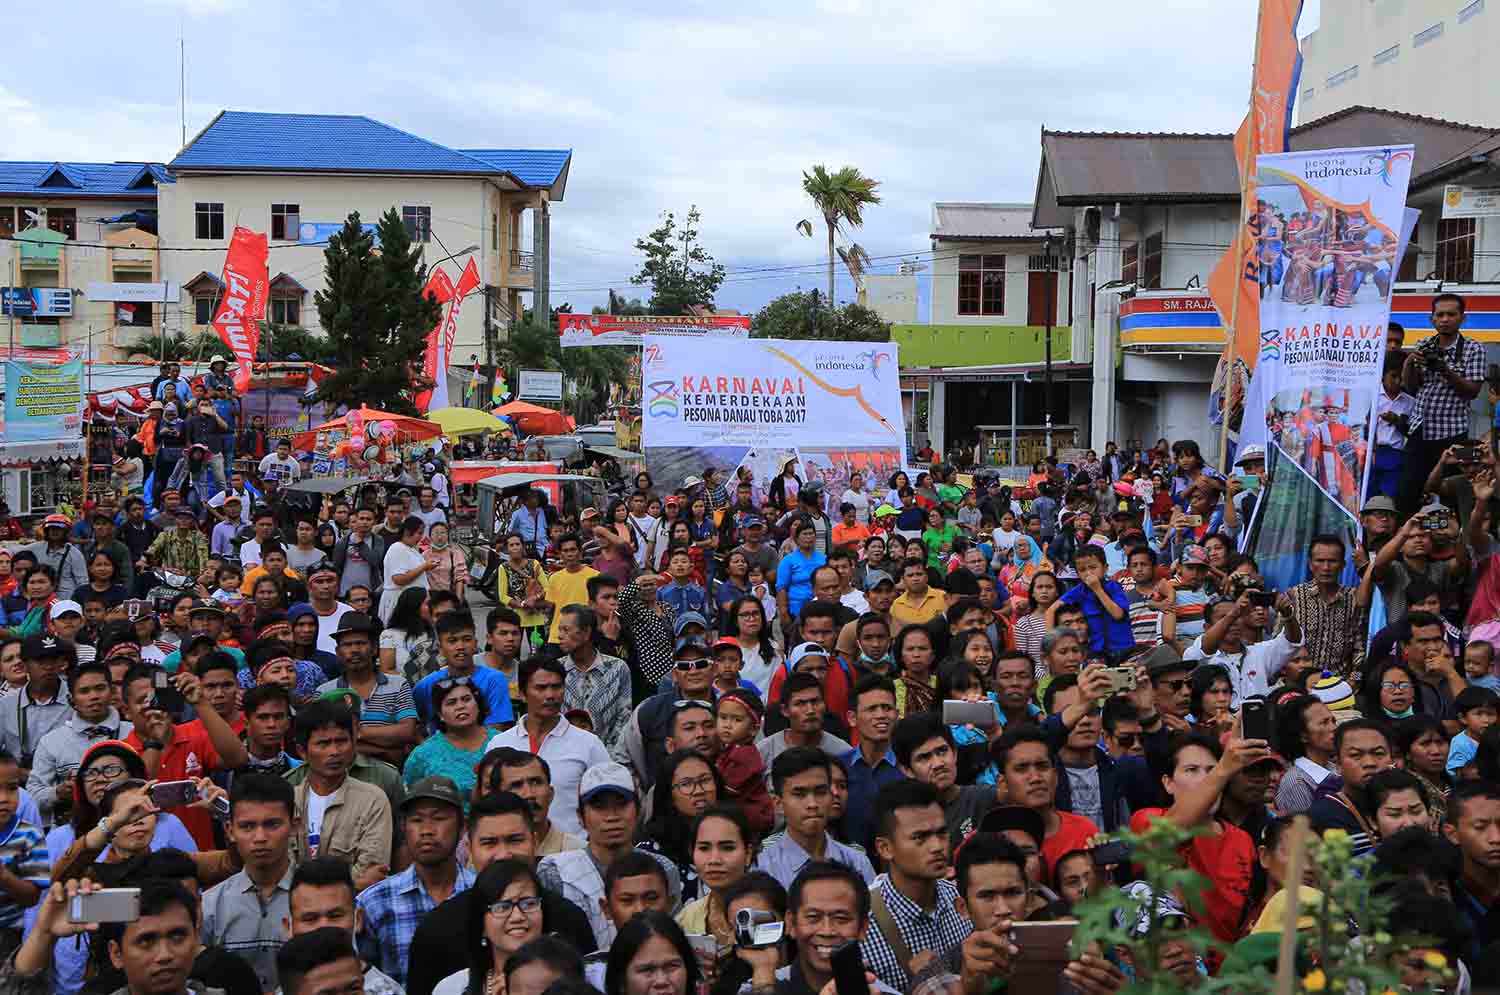 Ribuan Penonton Nikmati Karnaval Pesona Danau Toba 2017